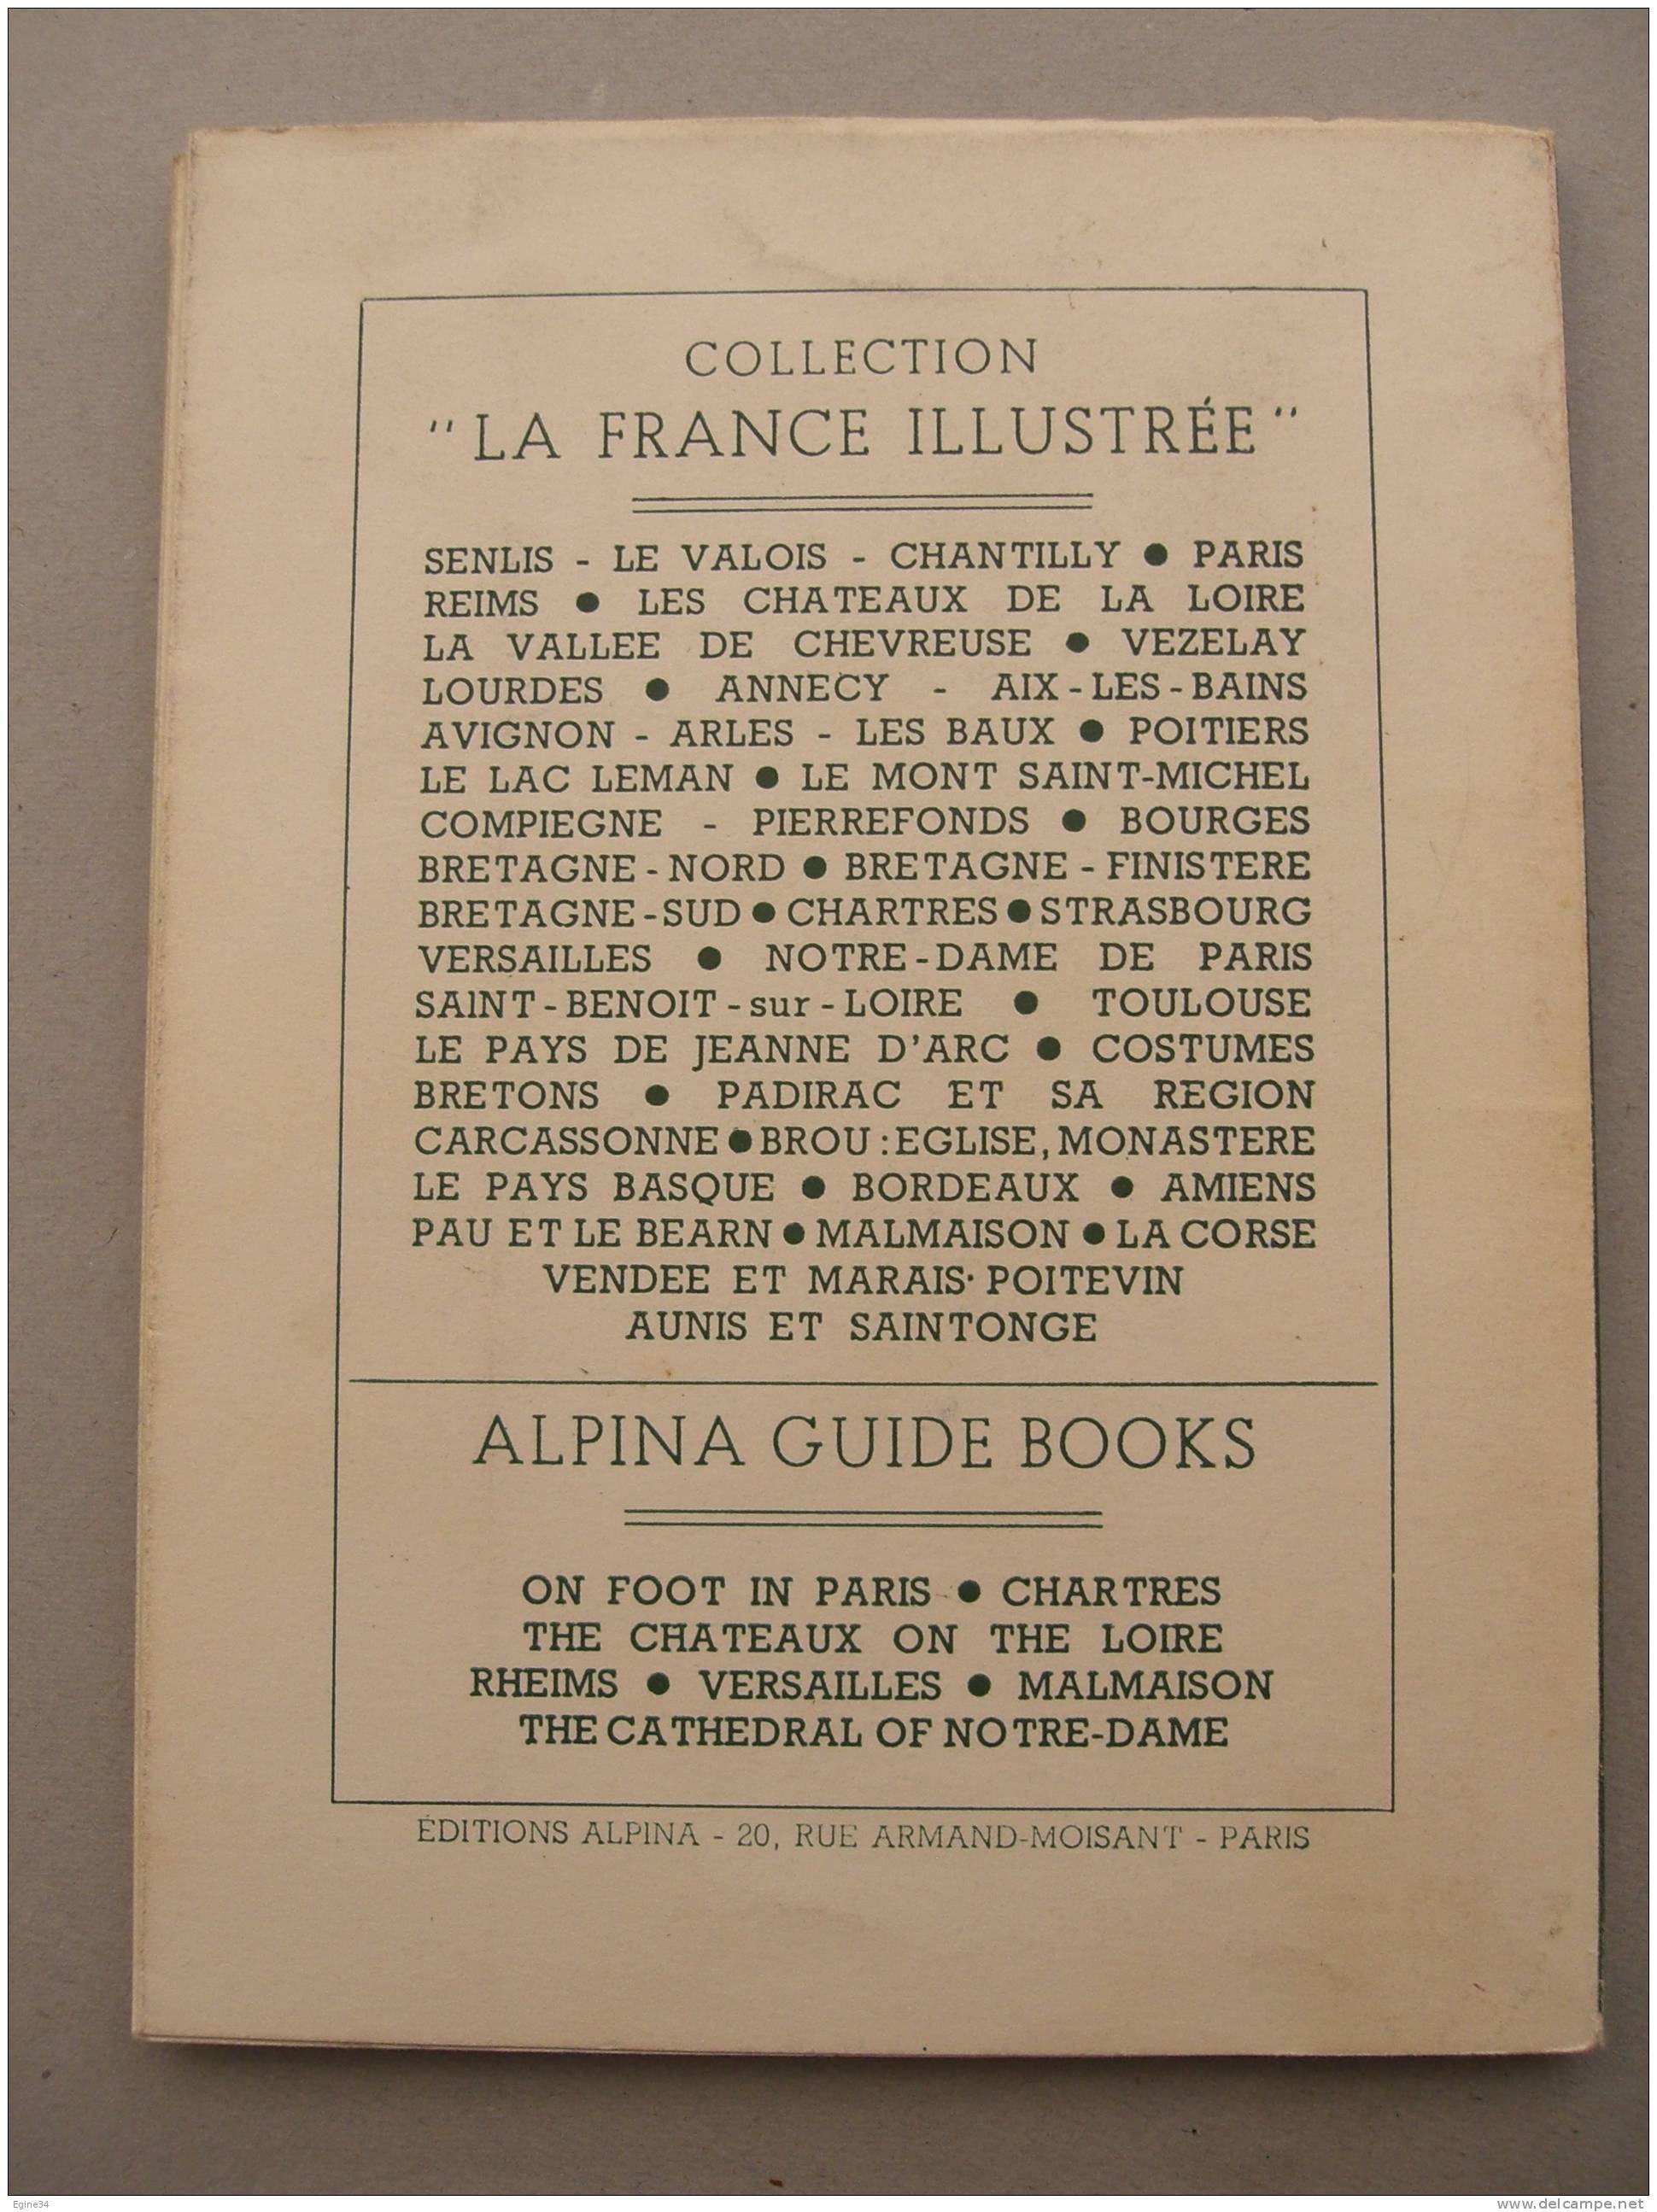 La France Illustrée  ALPINA -  Jacques De Laprade  - PAU Et Le BEARN  - Photos De Jean DIEUZAIDE - 1953 - Pays Basque